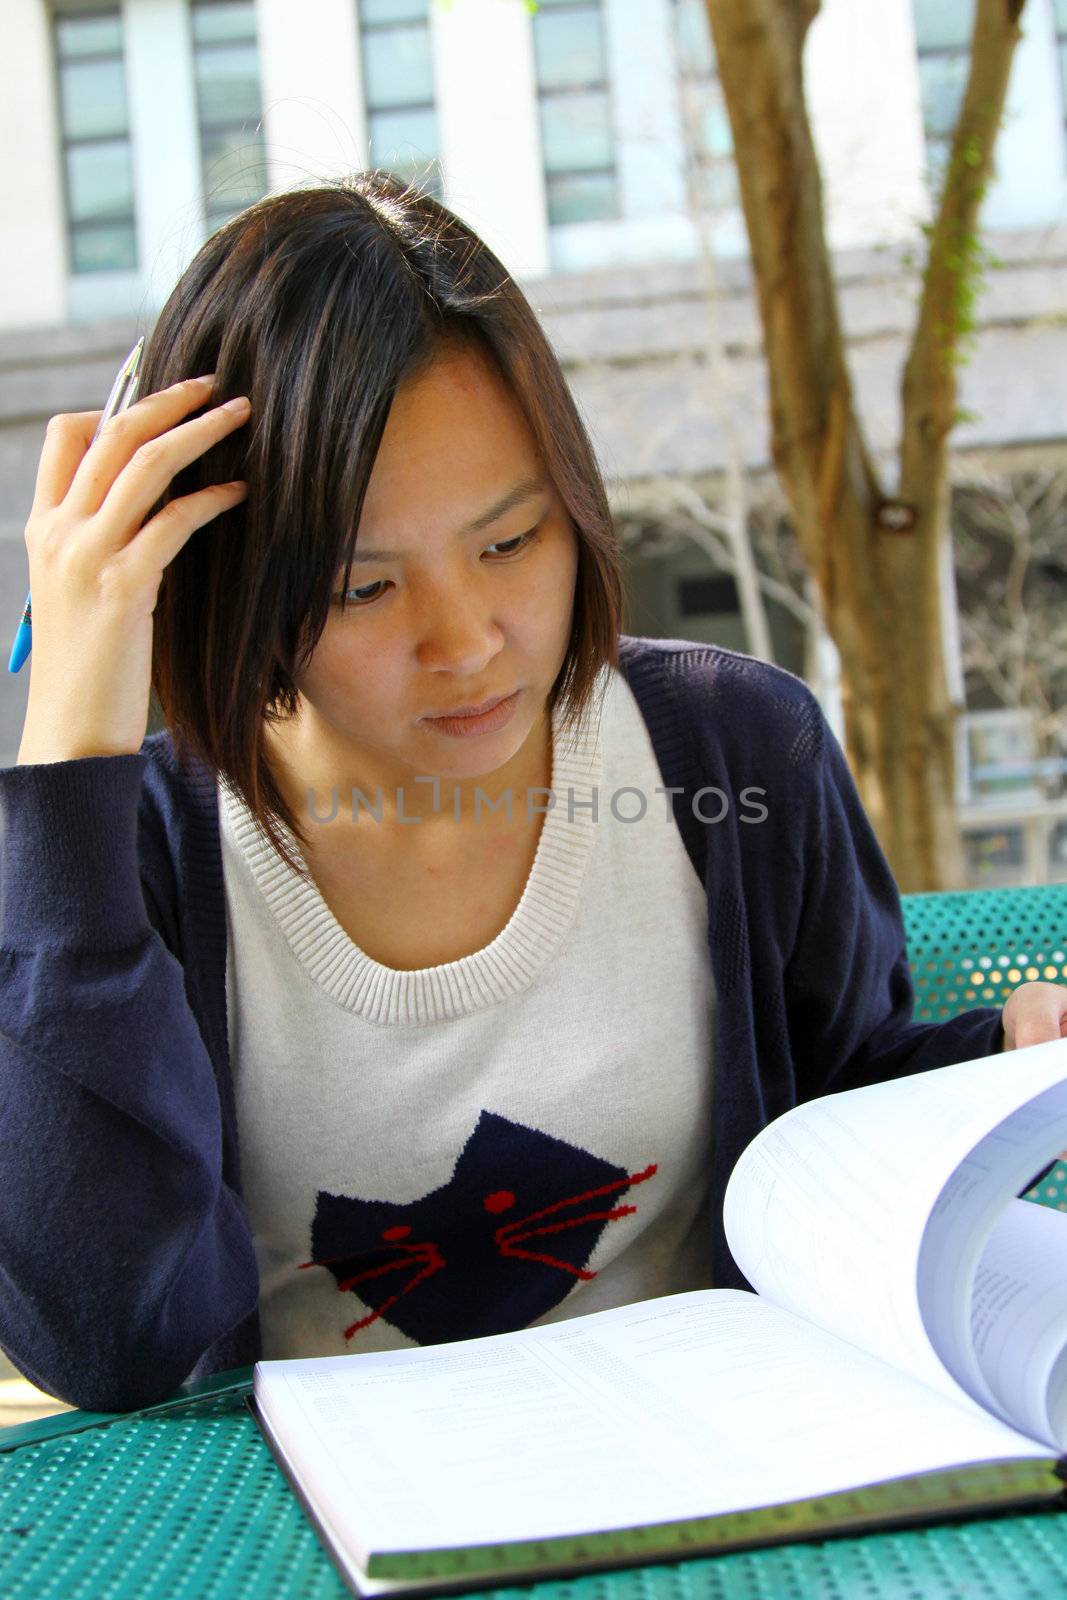 Asian girl studying in university